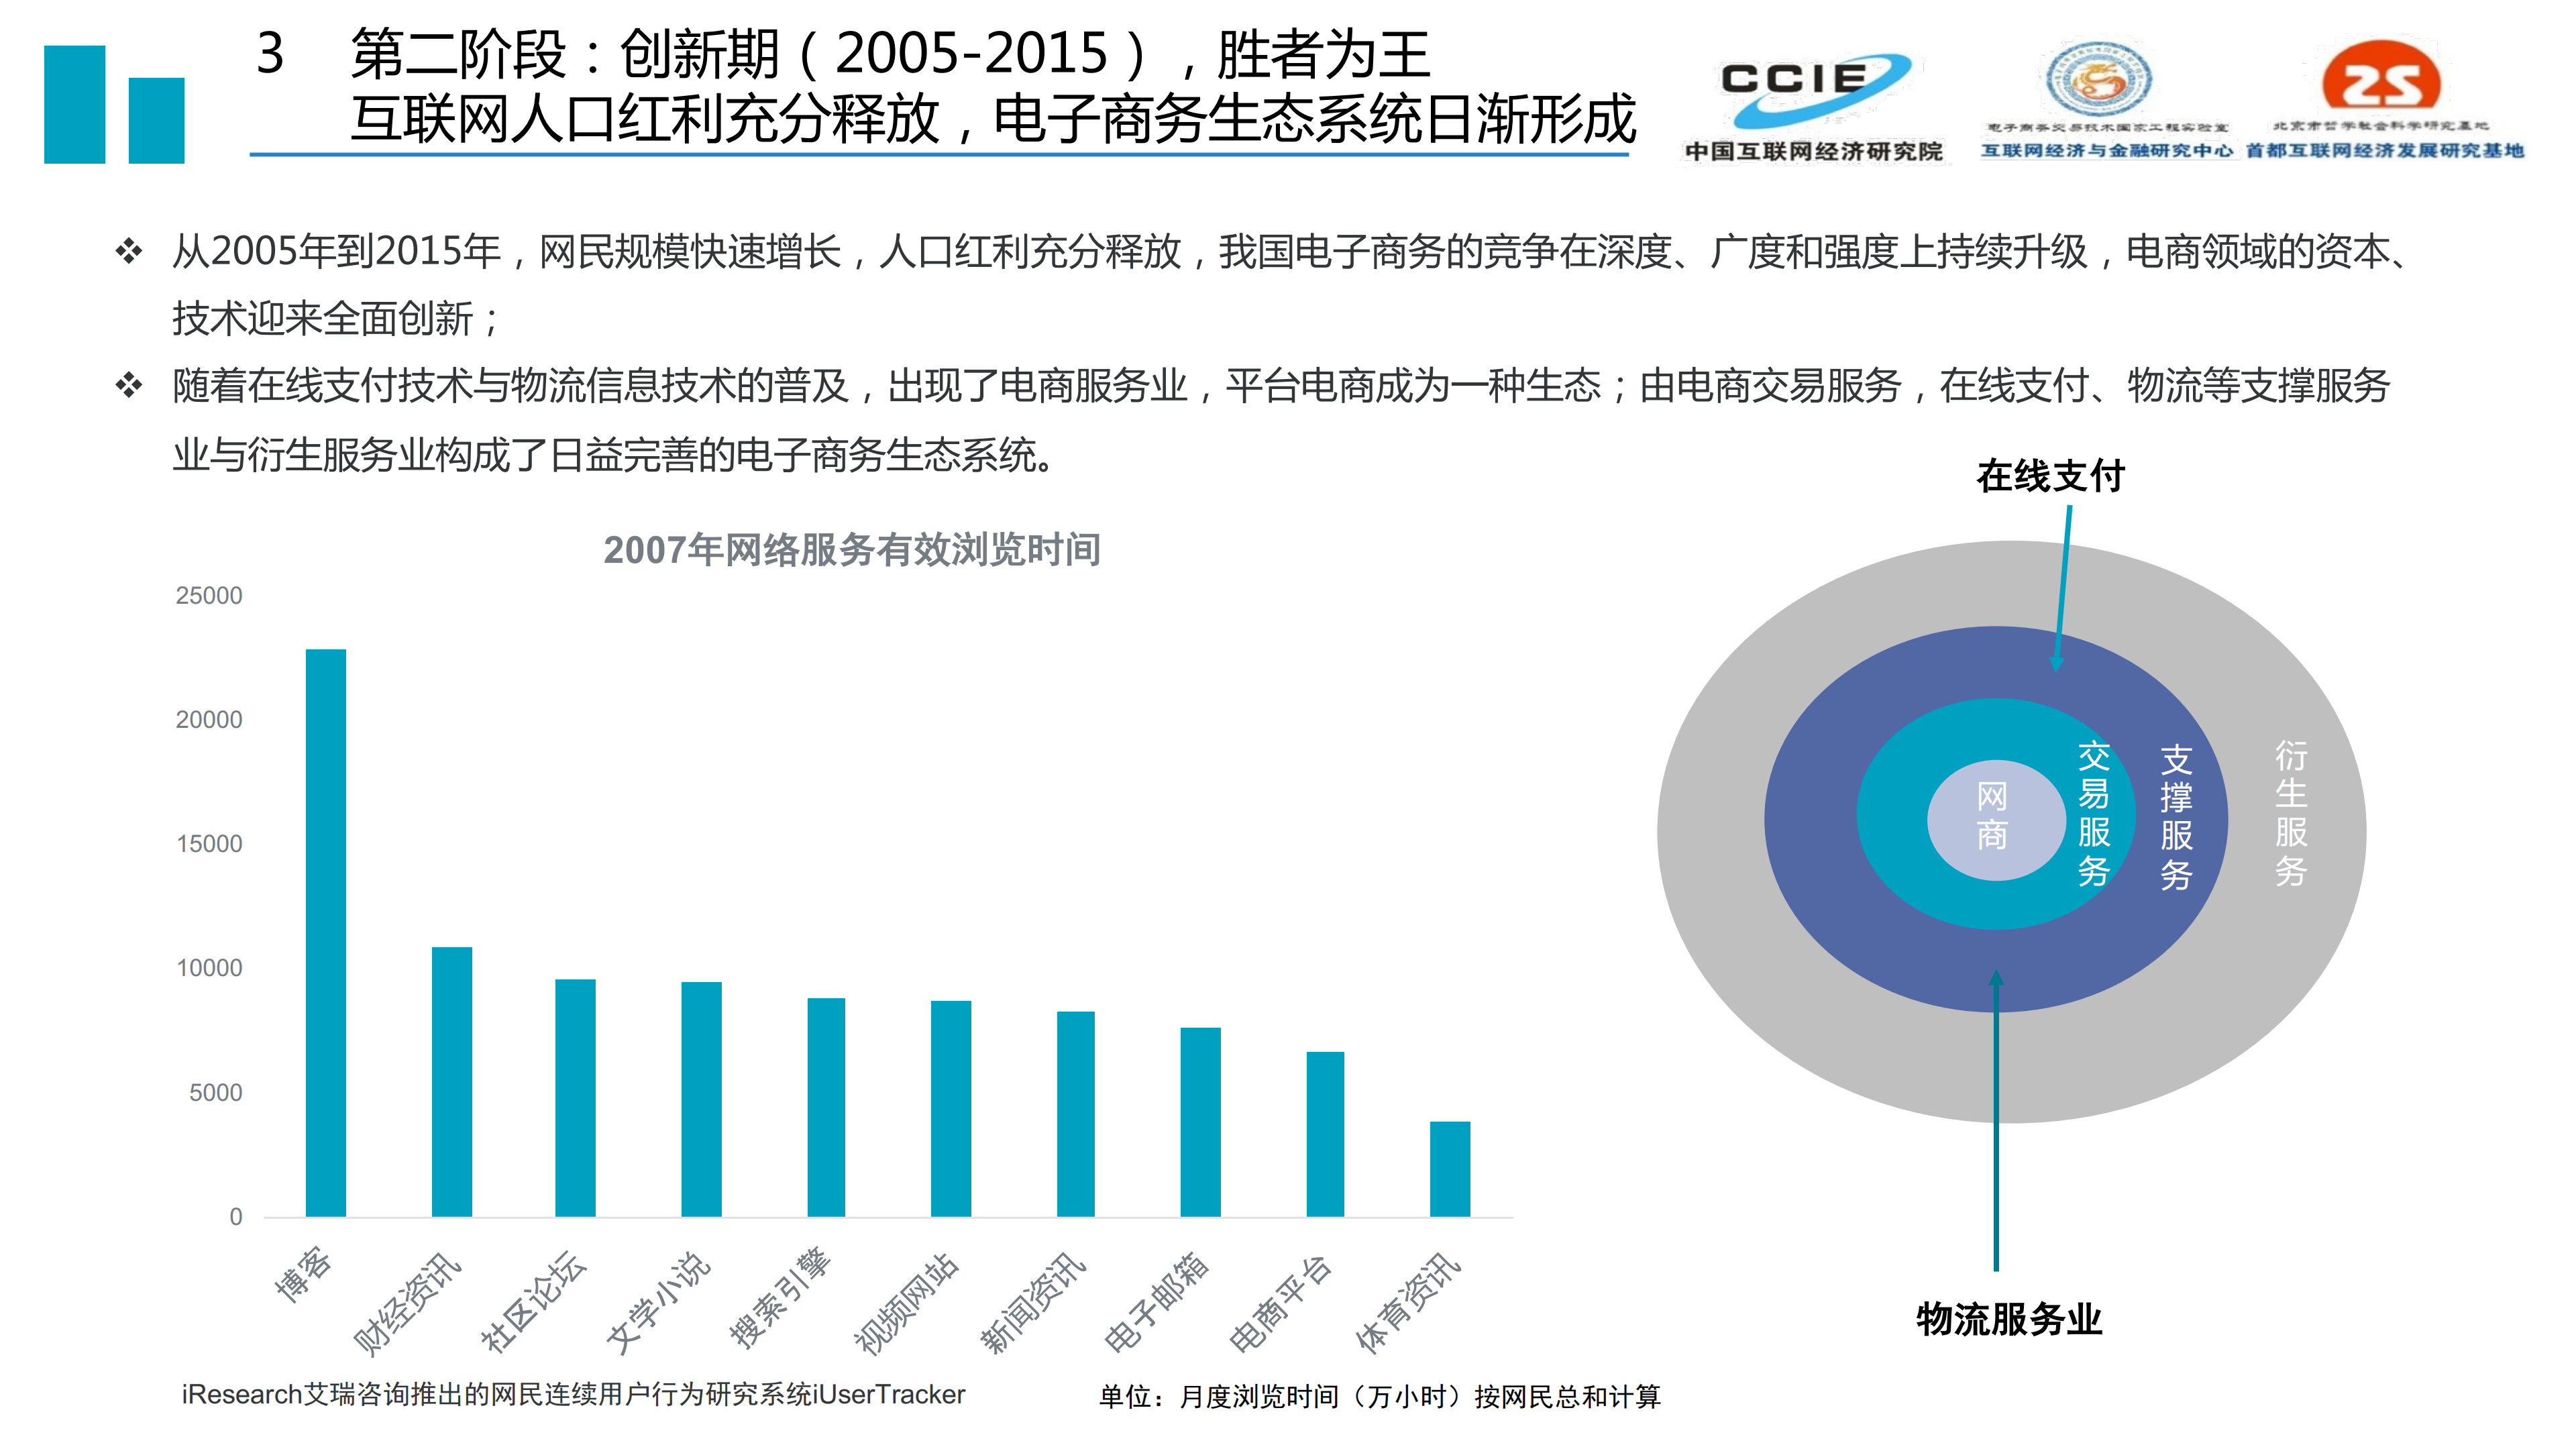 后浪更磅礴-中国电子商务发展二十年(20190611定稿)_12.png